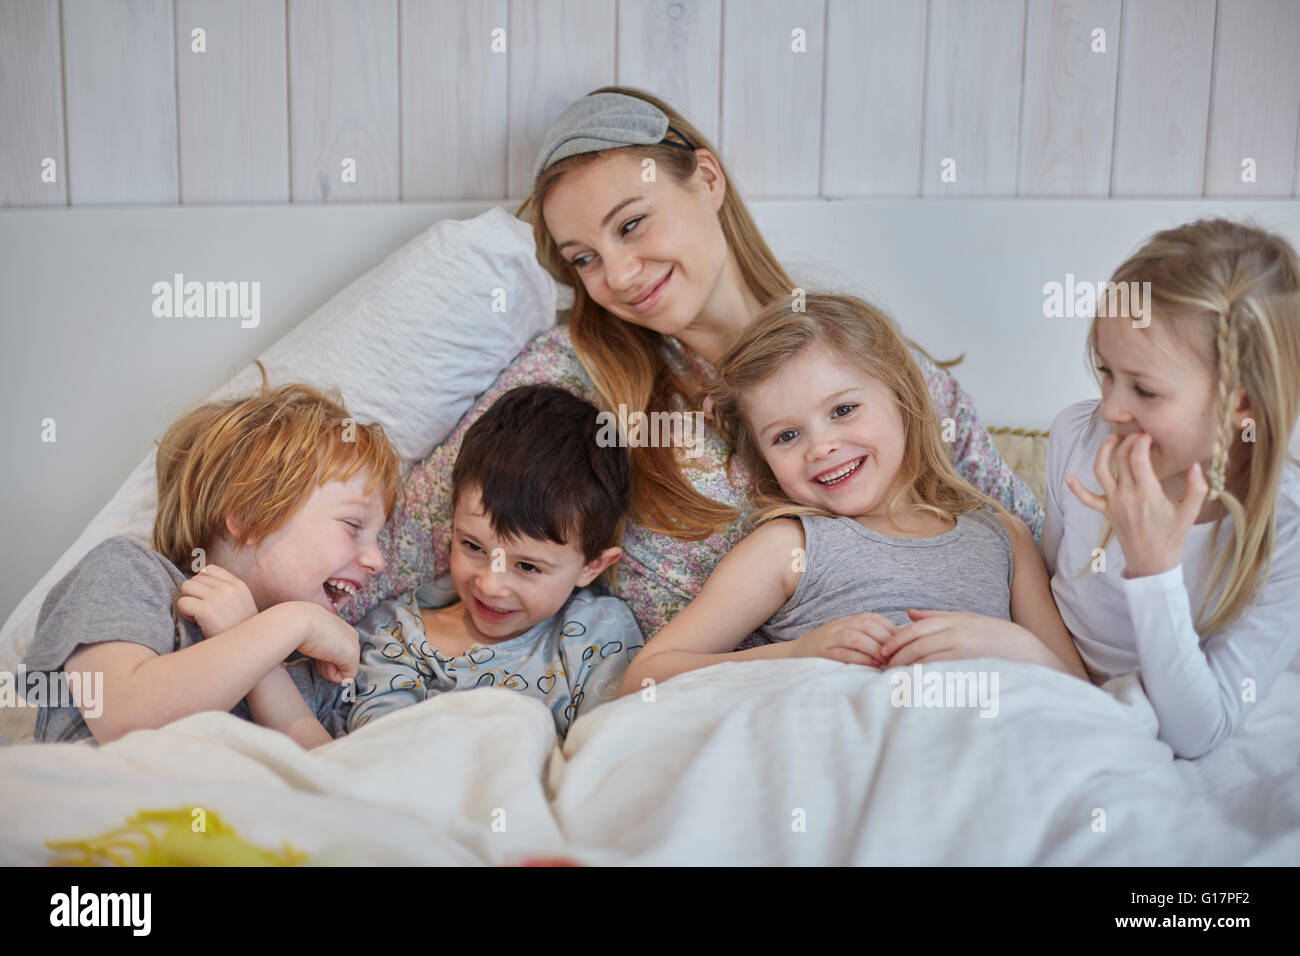 Madre e hijos juntos en la cama Foto de stock